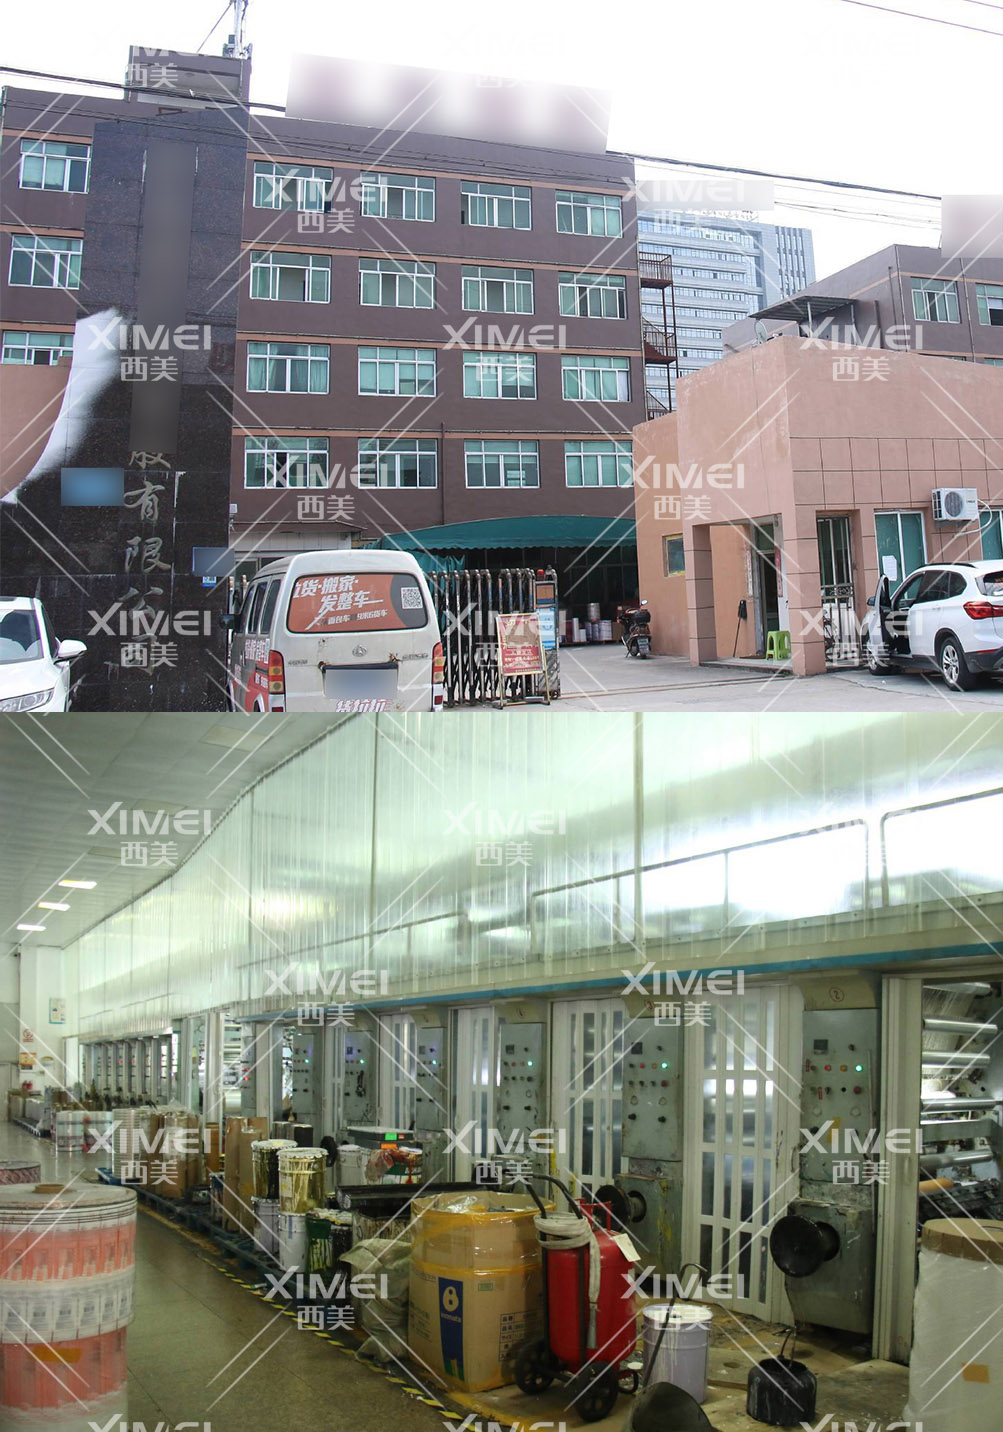 恭喜温州市XX塑胶有限公司顺利通过质量验厂审核(图1)